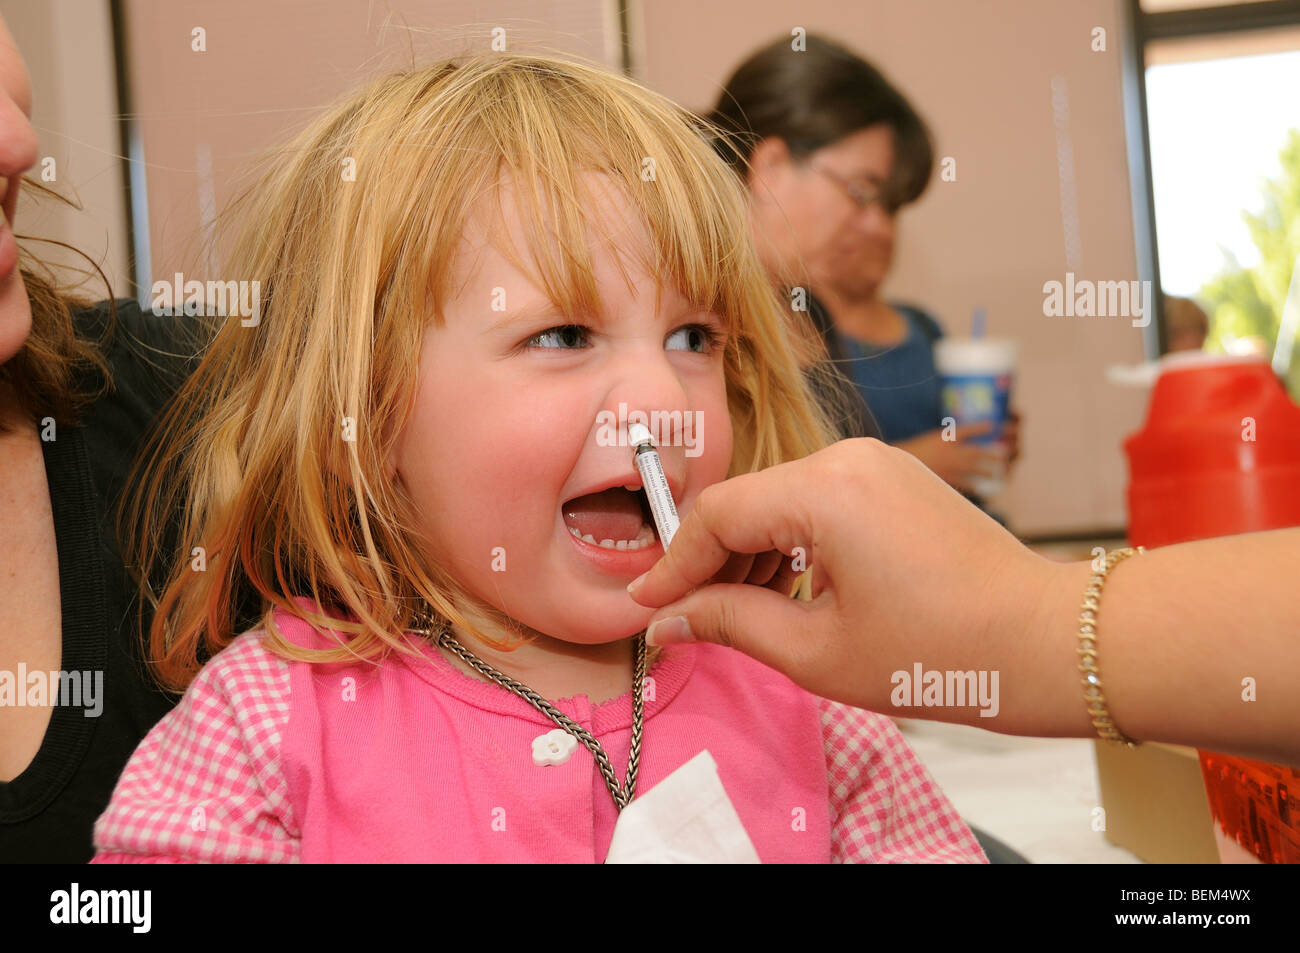 Un 4-year-old girl est vacciné contre la grippe H1N1, aussi connu sous le nom de la grippe porcine, avec un vaccin intranasal. Banque D'Images